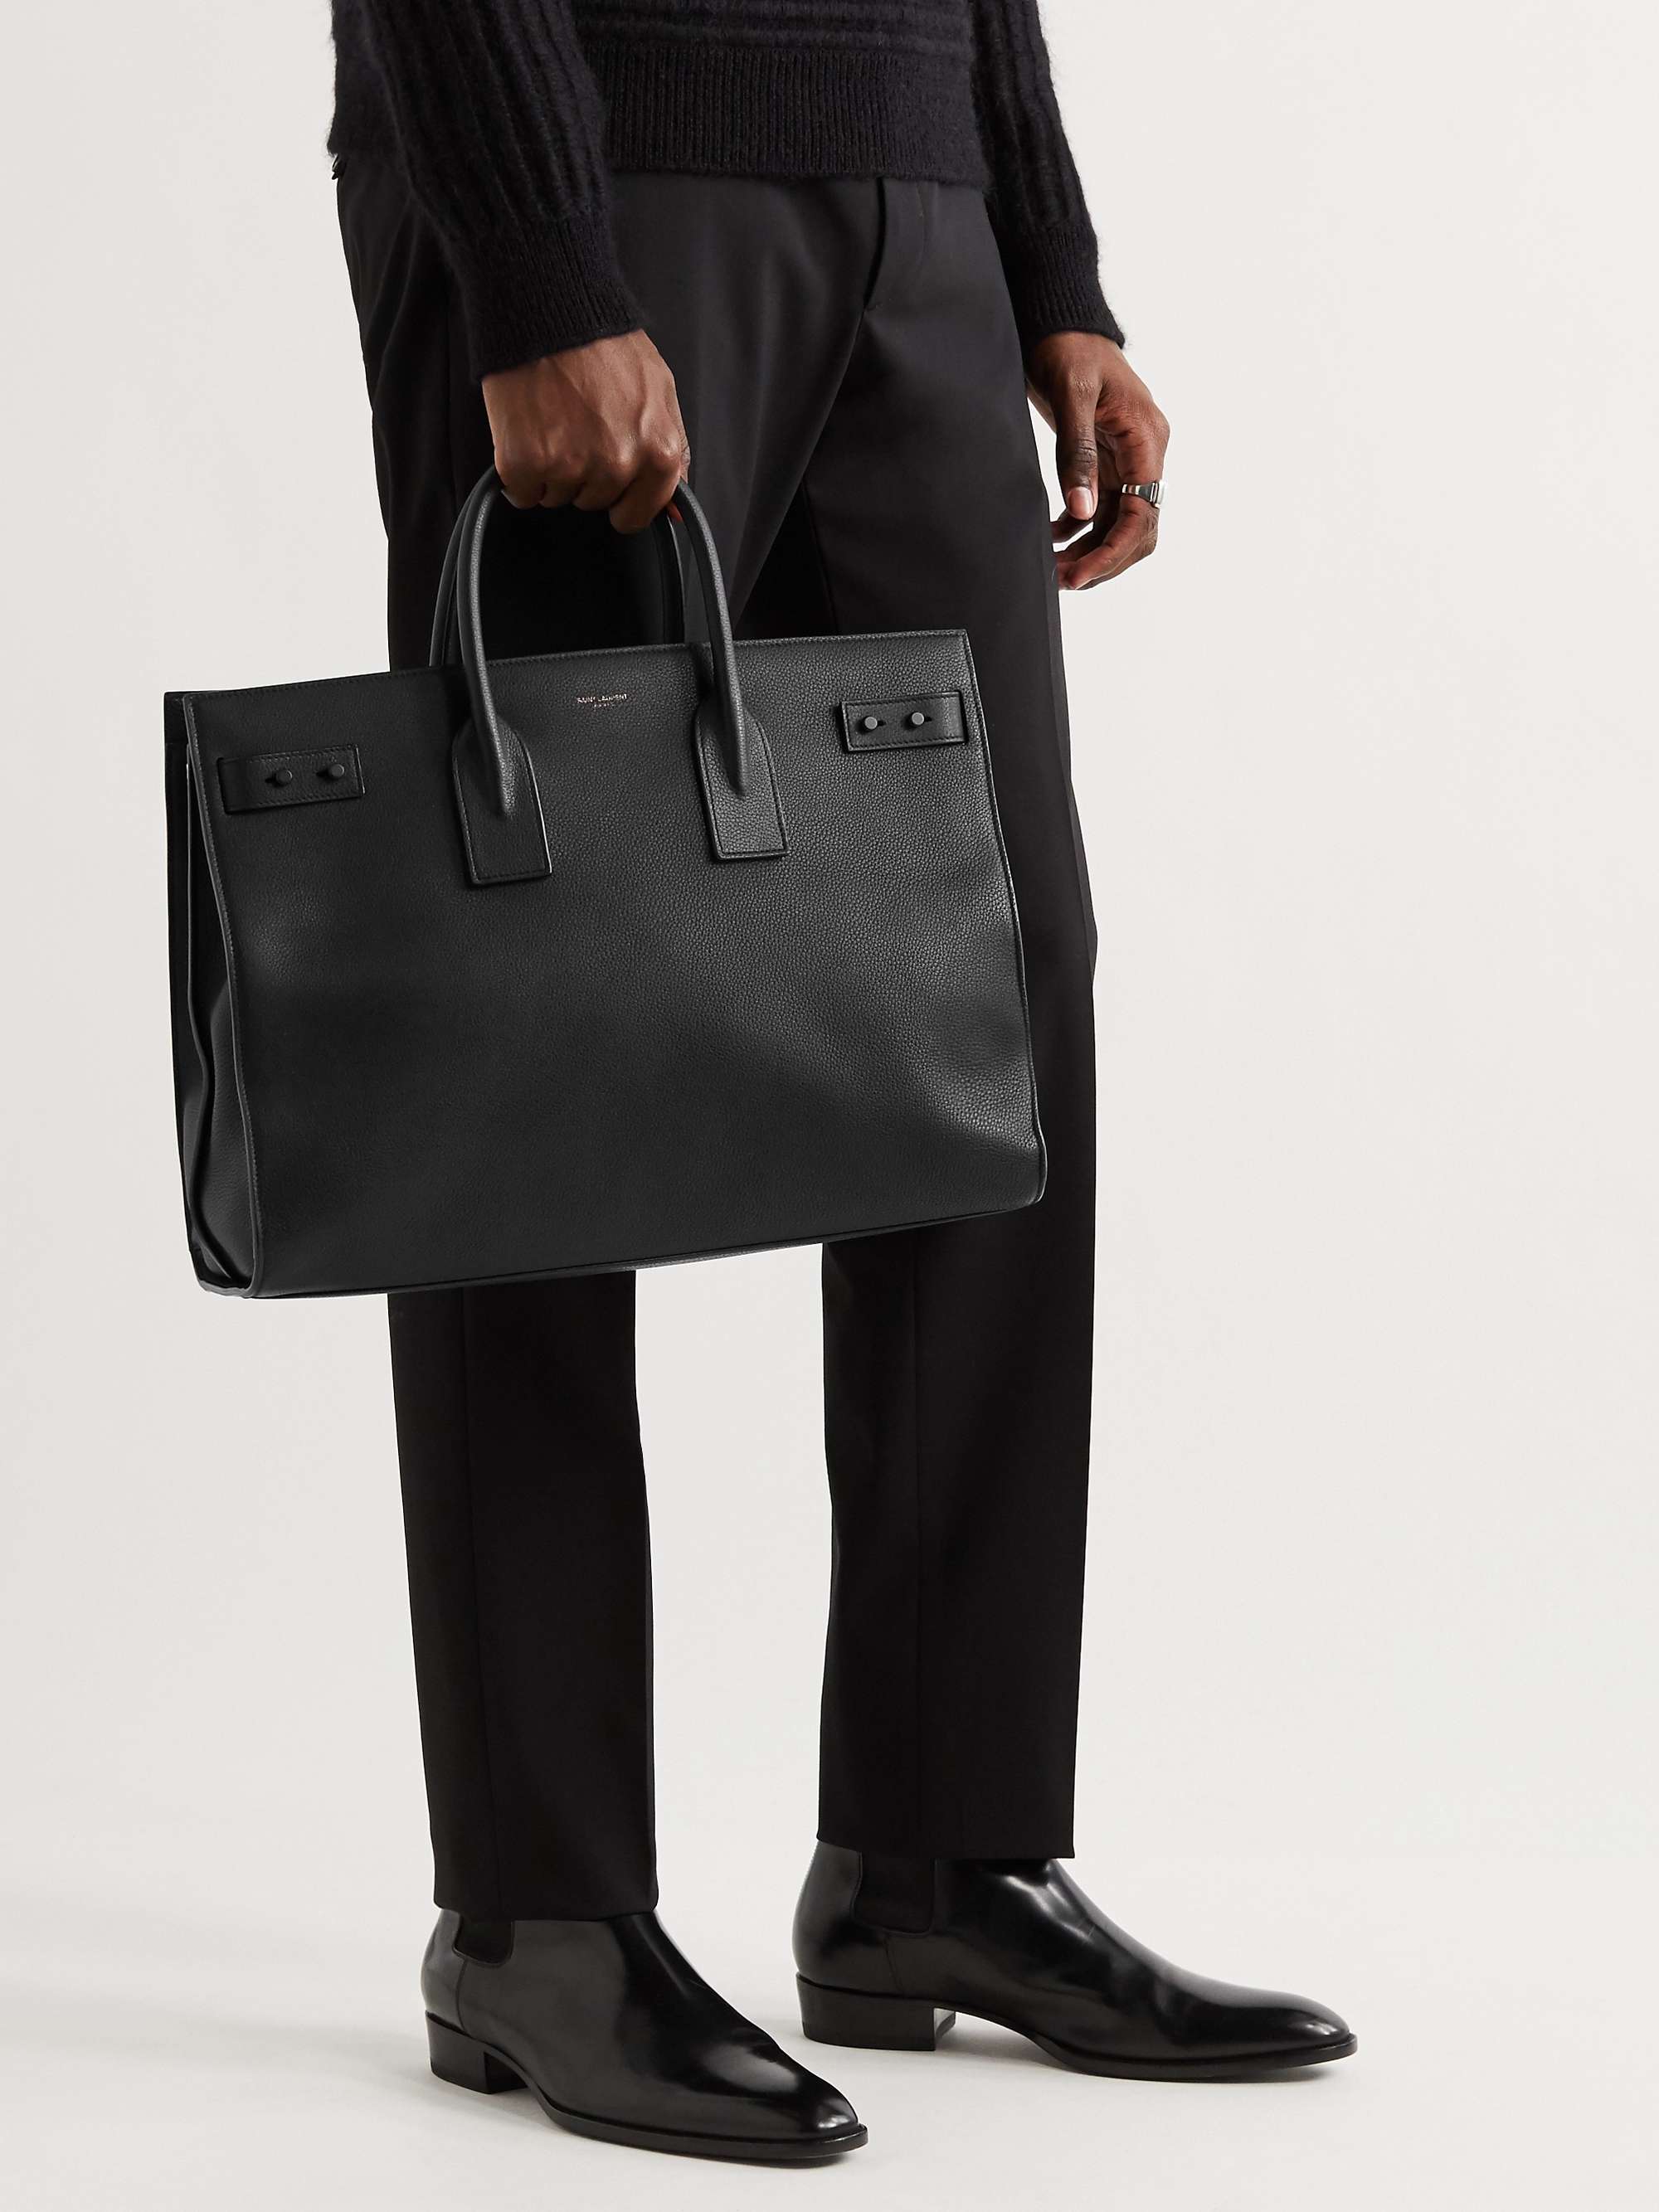 Saint Laurent Sac de Jour Large Full-Grain Leather Tote Bag - Men - Black Bags